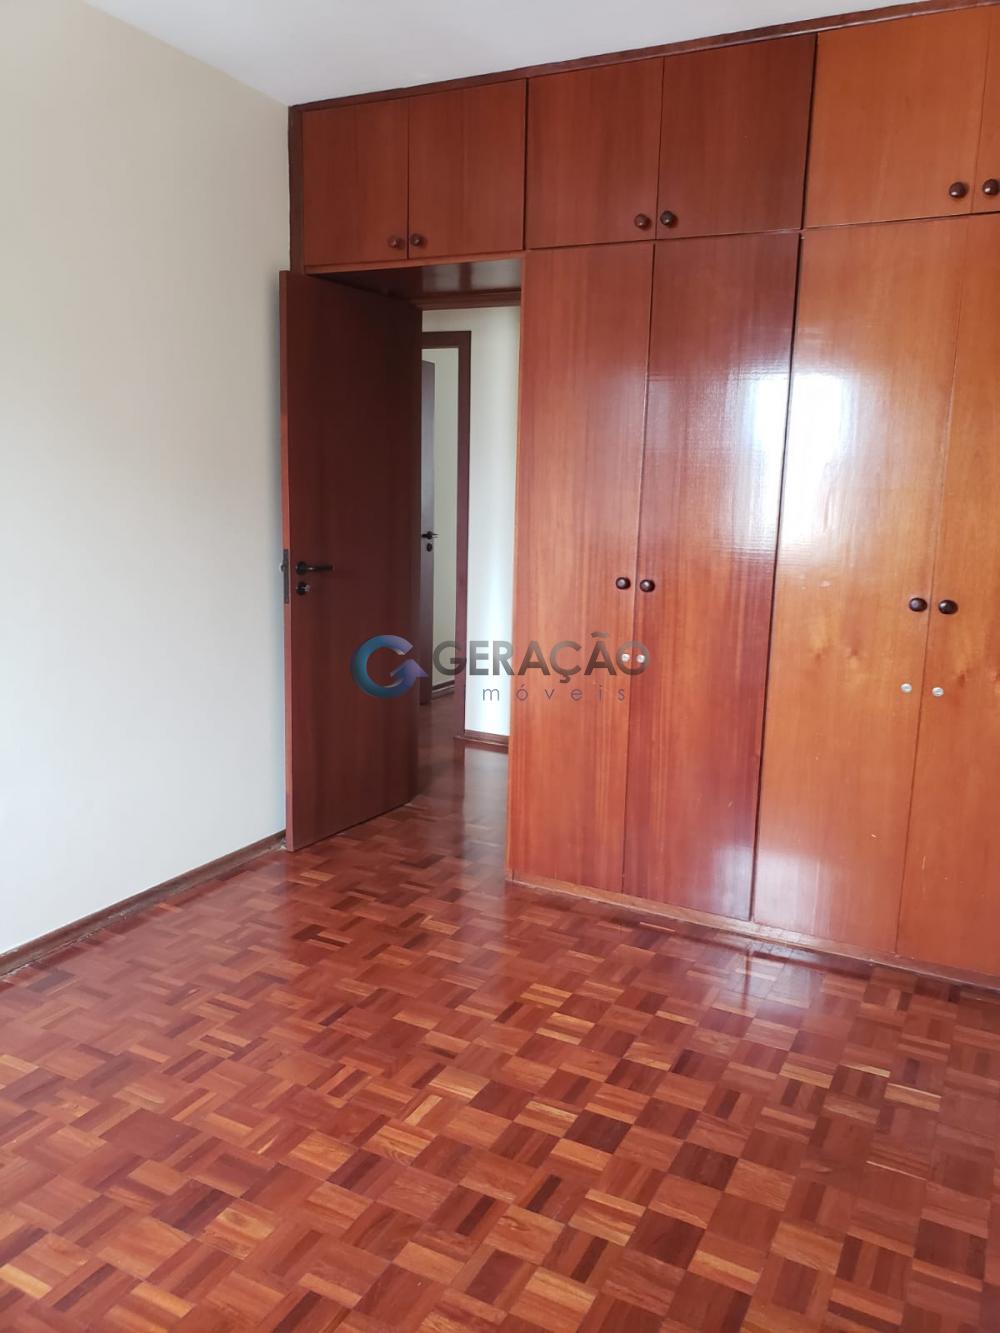 Comprar Apartamento / Cobertura em São José dos Campos R$ 890.000,00 - Foto 10